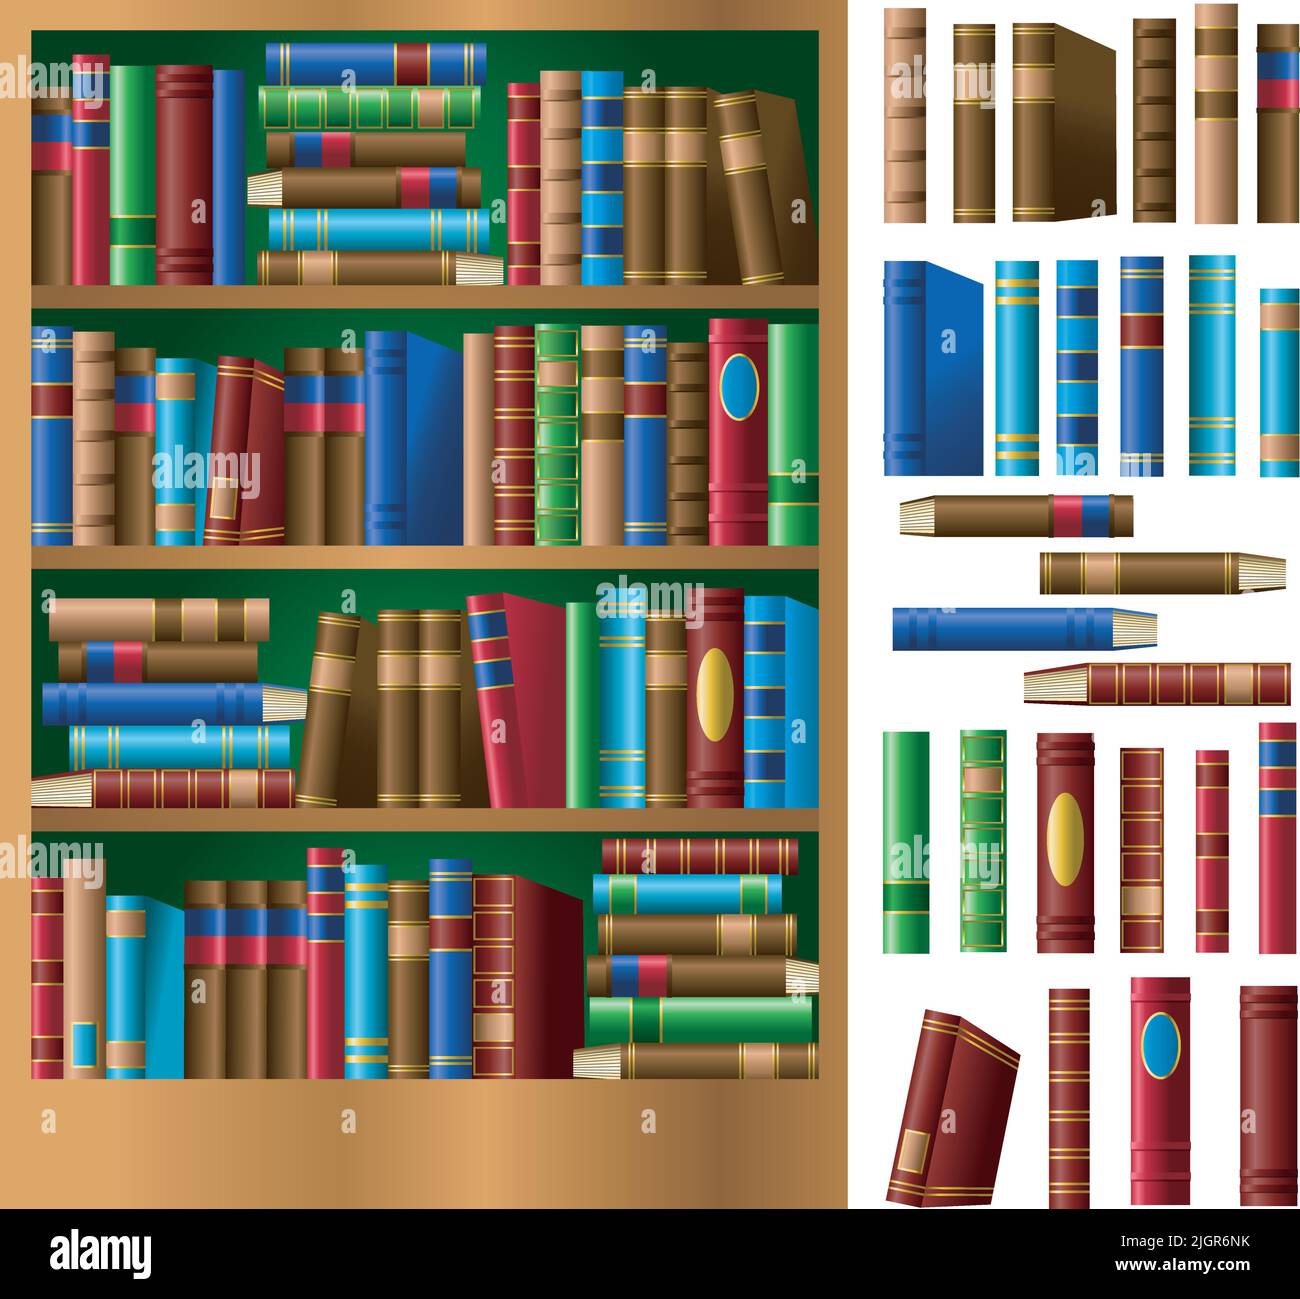 Eine grafische Vektordarstellung eines Bücherregals und ledergebundener Bücher. Stock Vektor